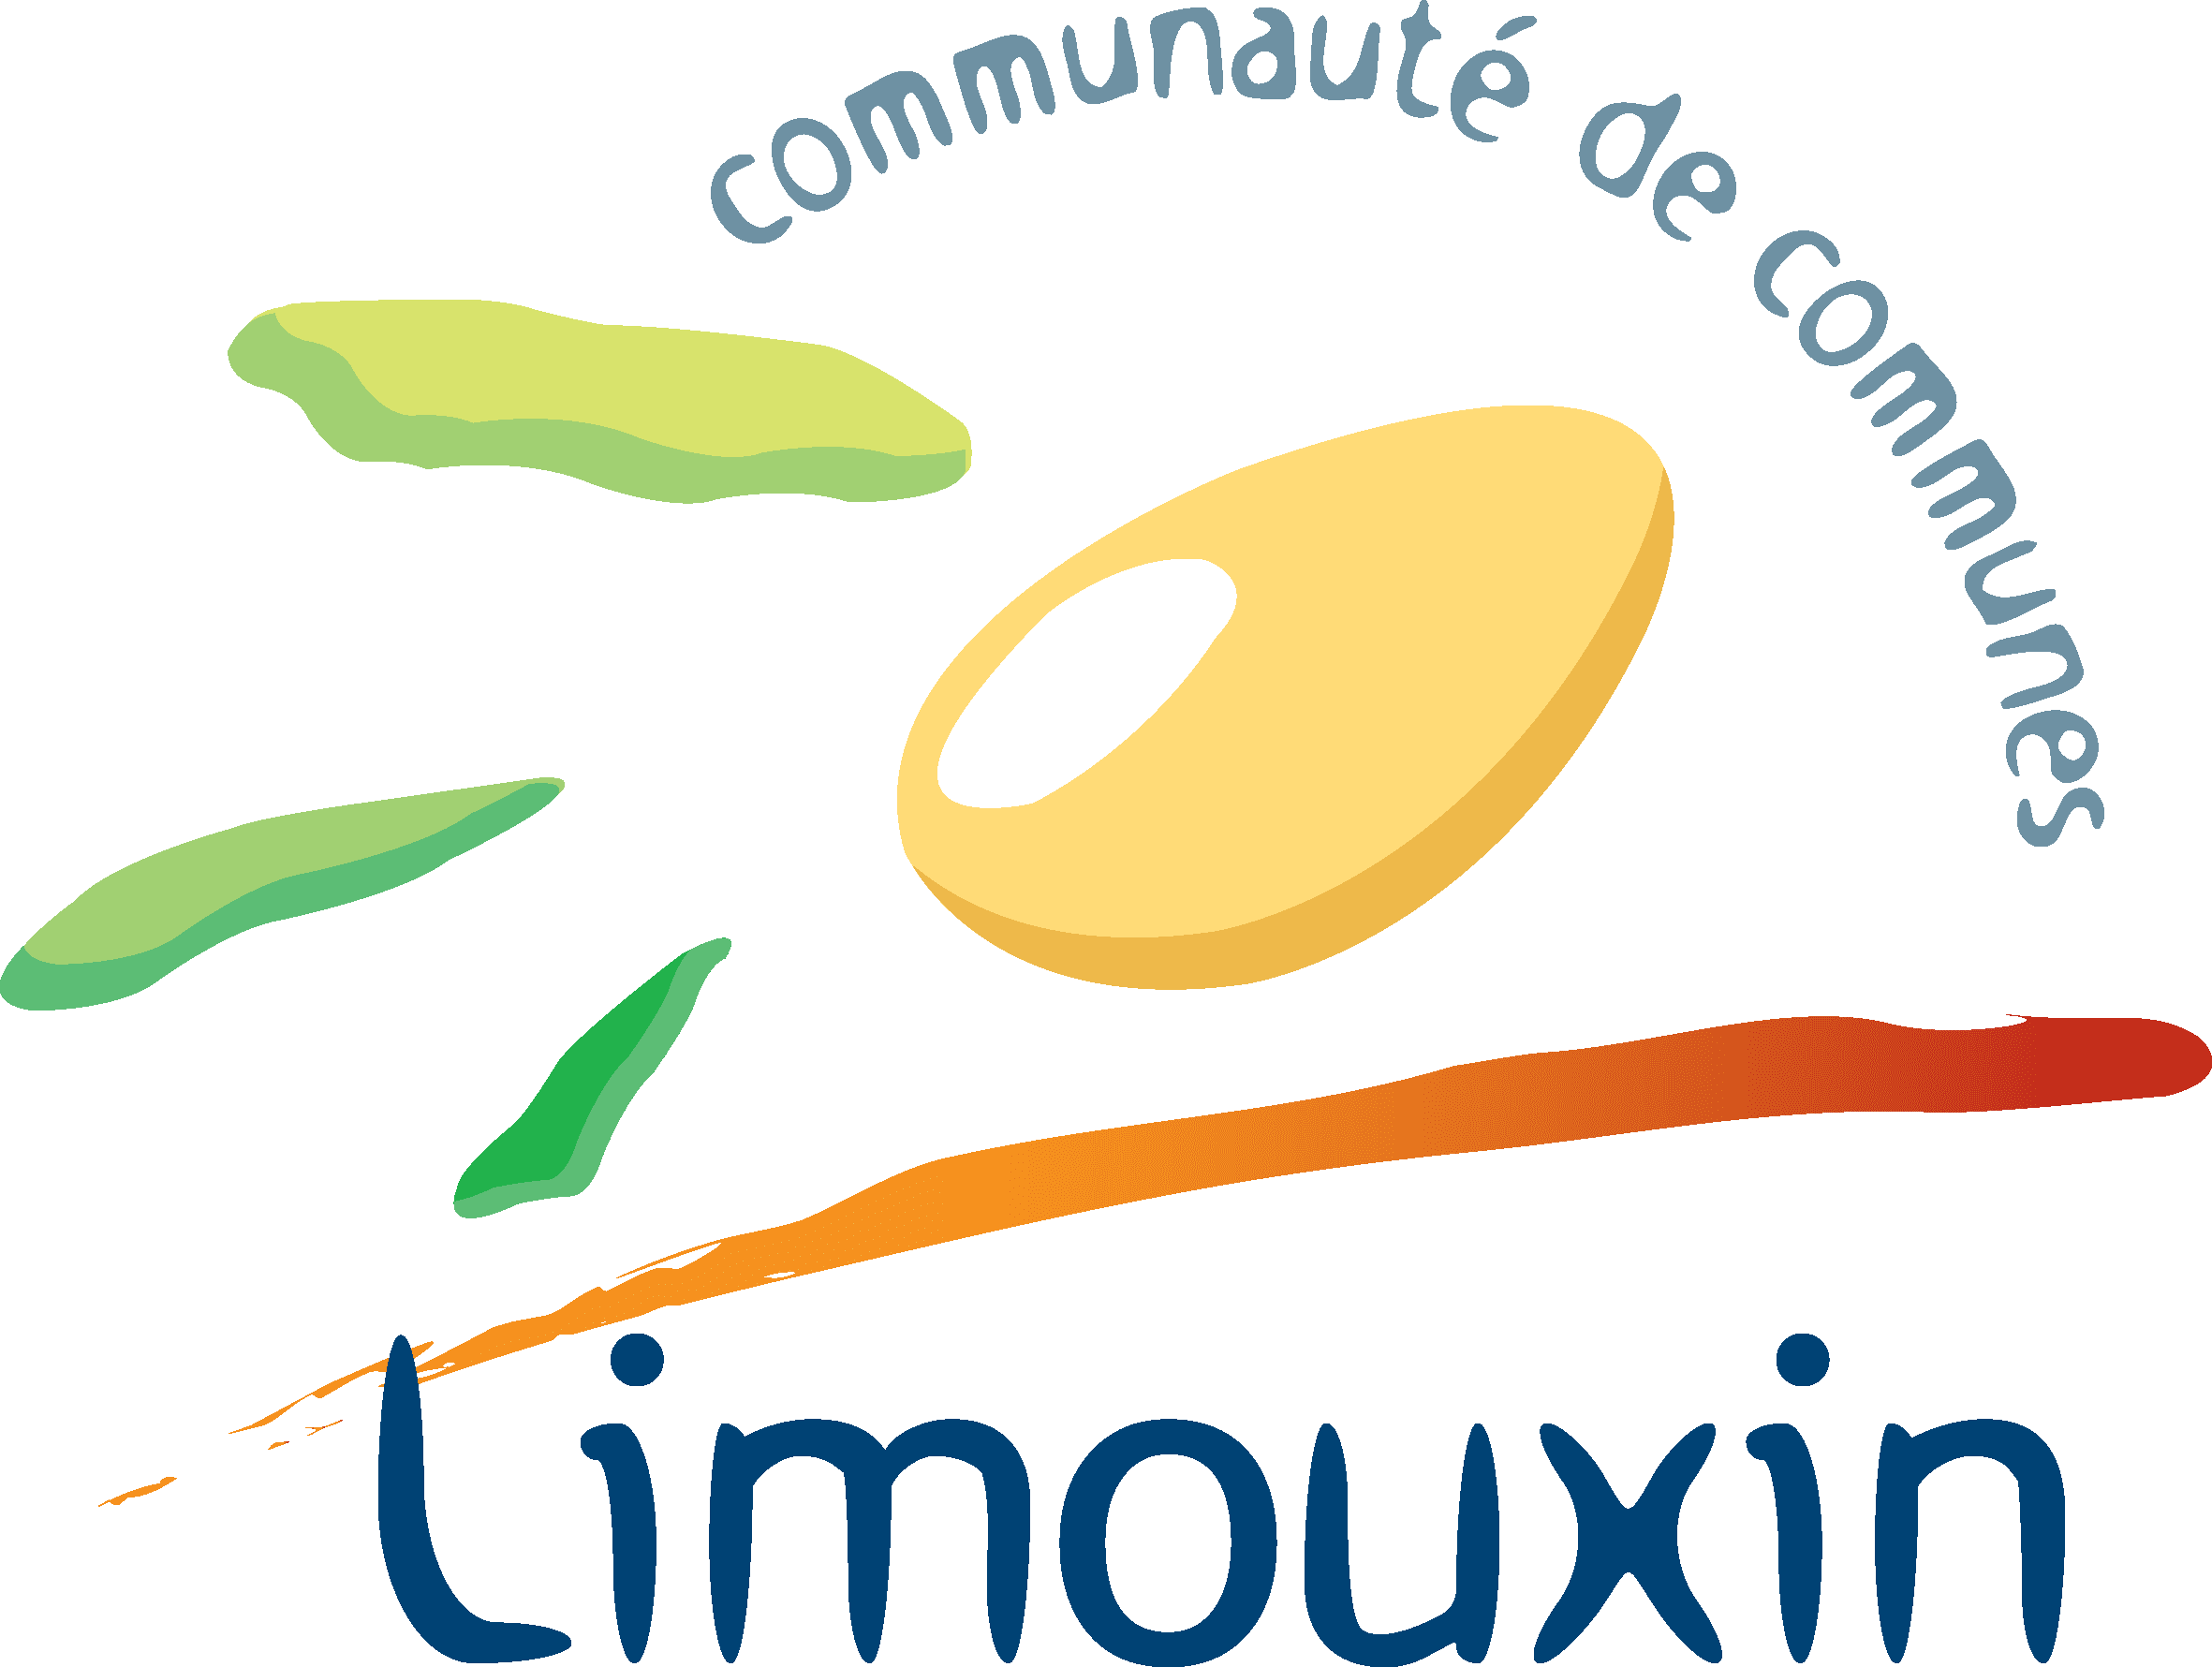 Communauté des communes du Limouxin